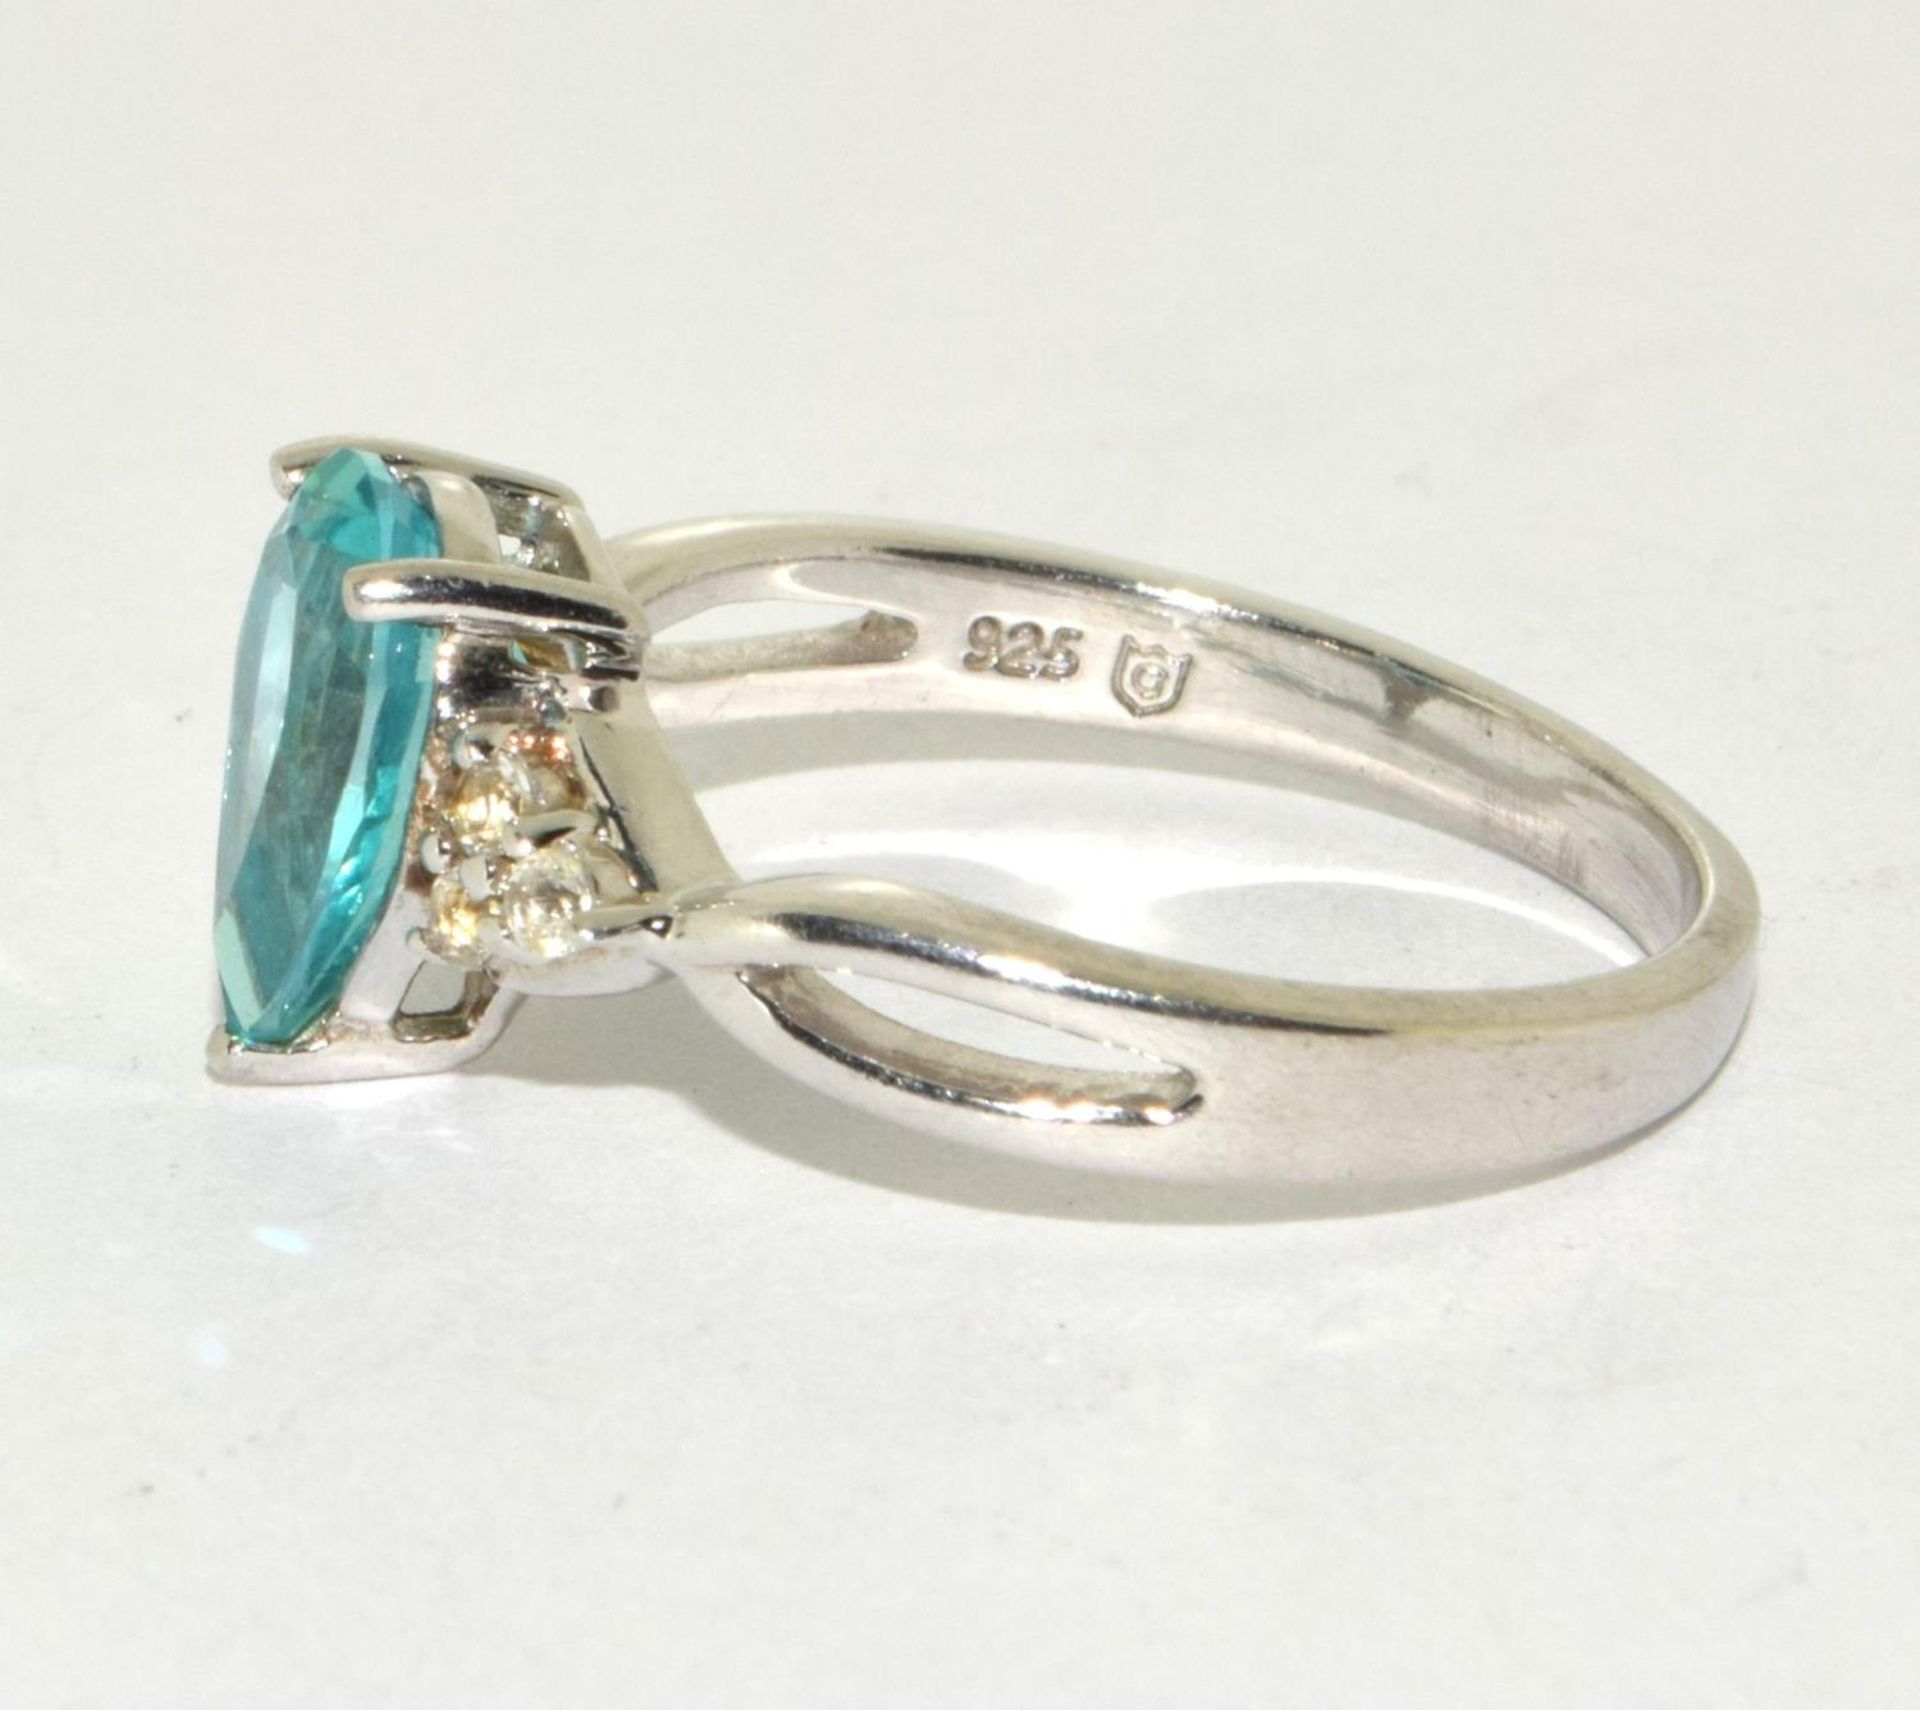 Gemporia Pariba Tourmaline Diamond 925 silver ring size S - Image 2 of 3